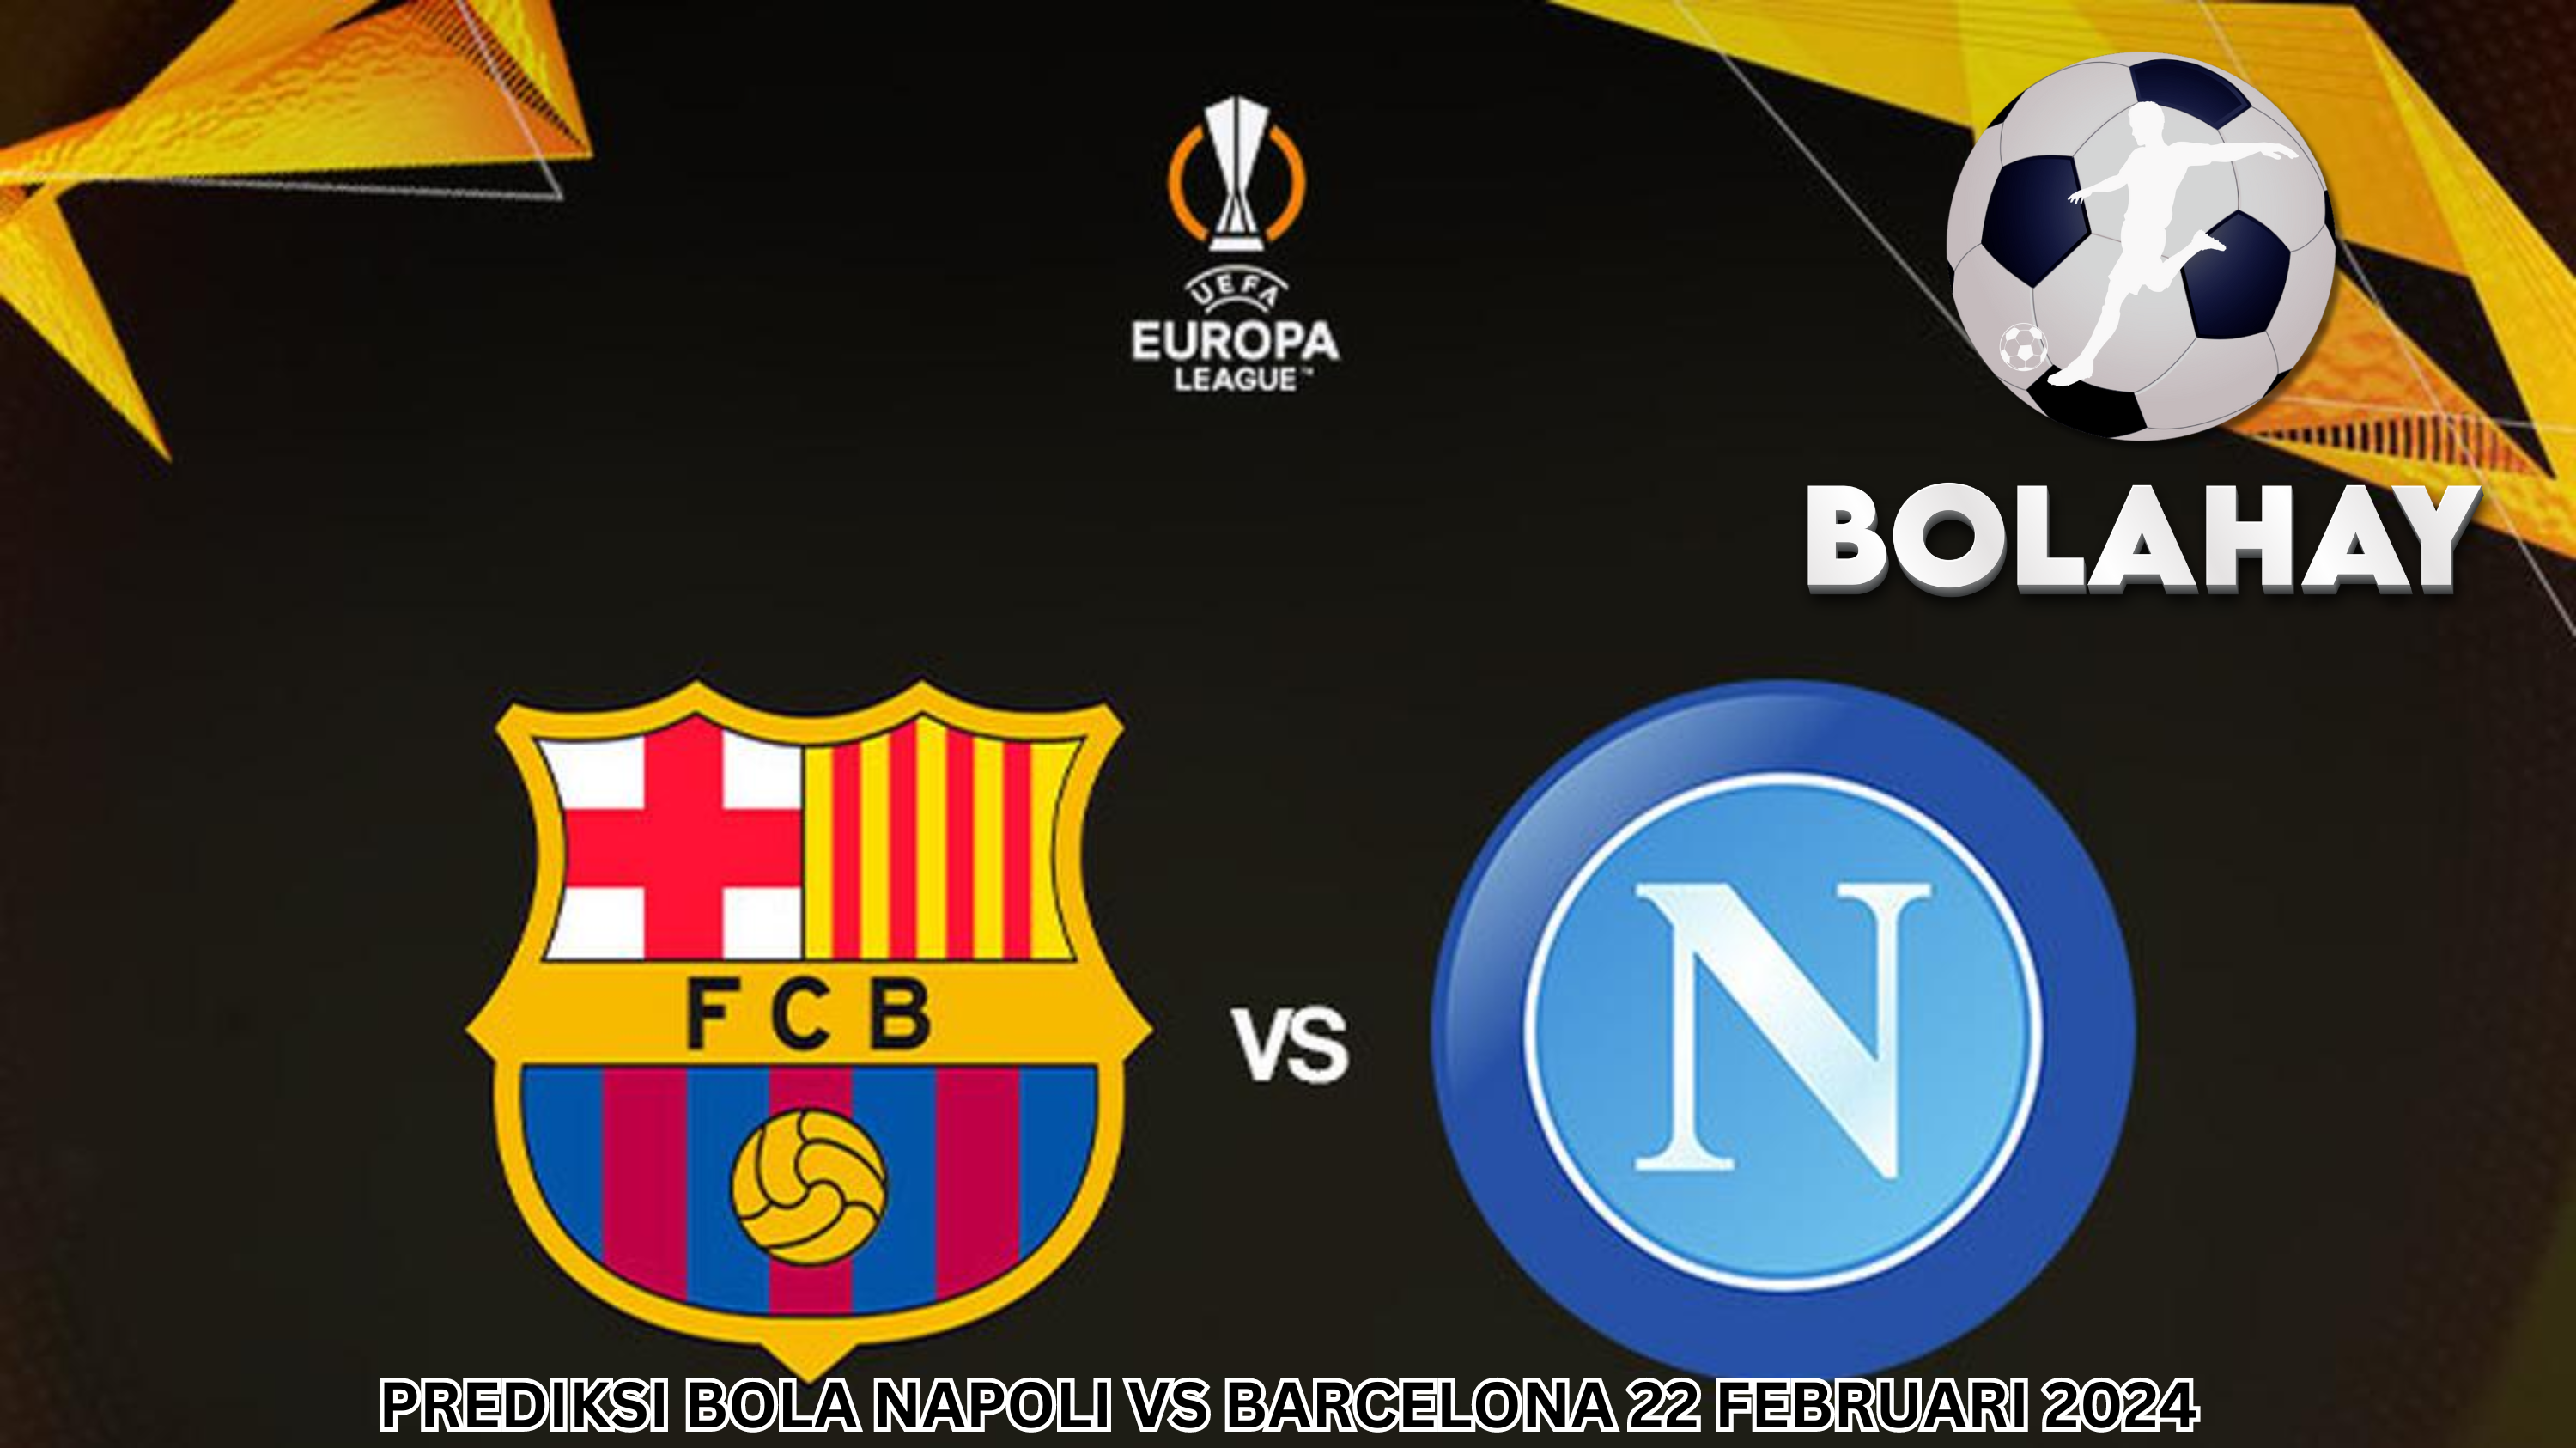 Prediksi Bola: Napoli Vs Barcelona 22 Februari 2024